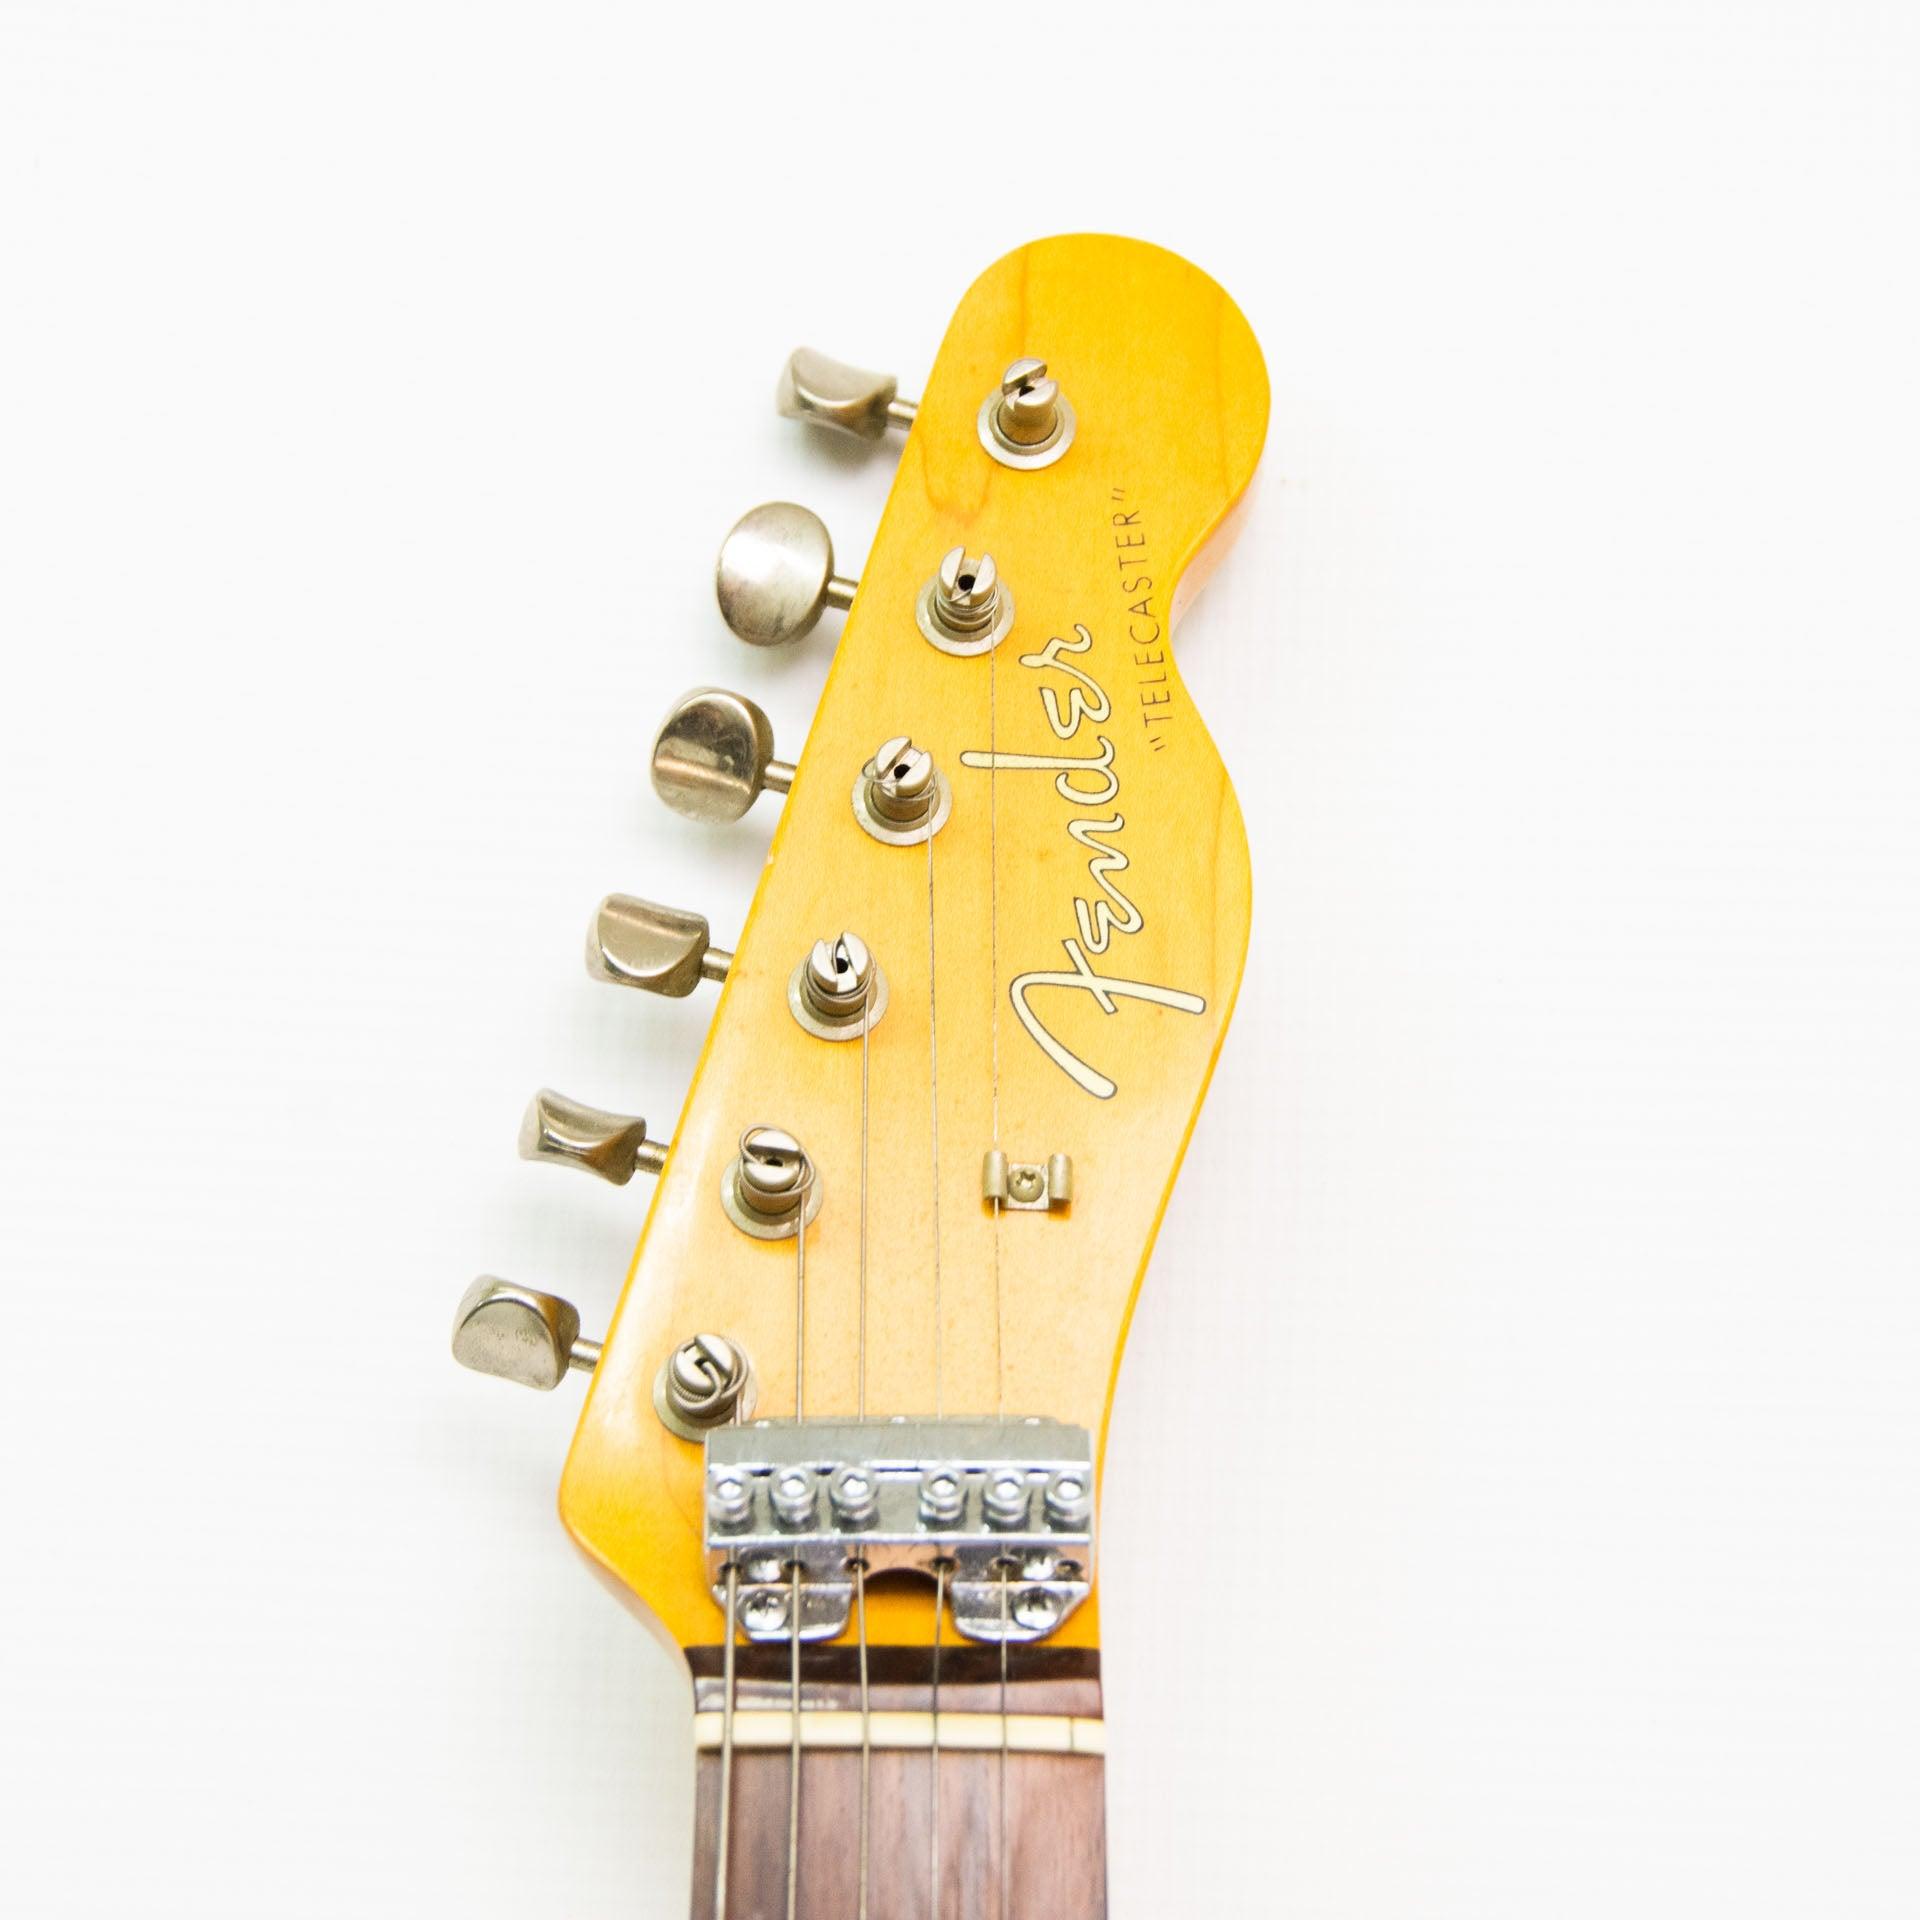 Fender Telecaster Sunburst - Year 85-86 MIJ - ipawnishop.com